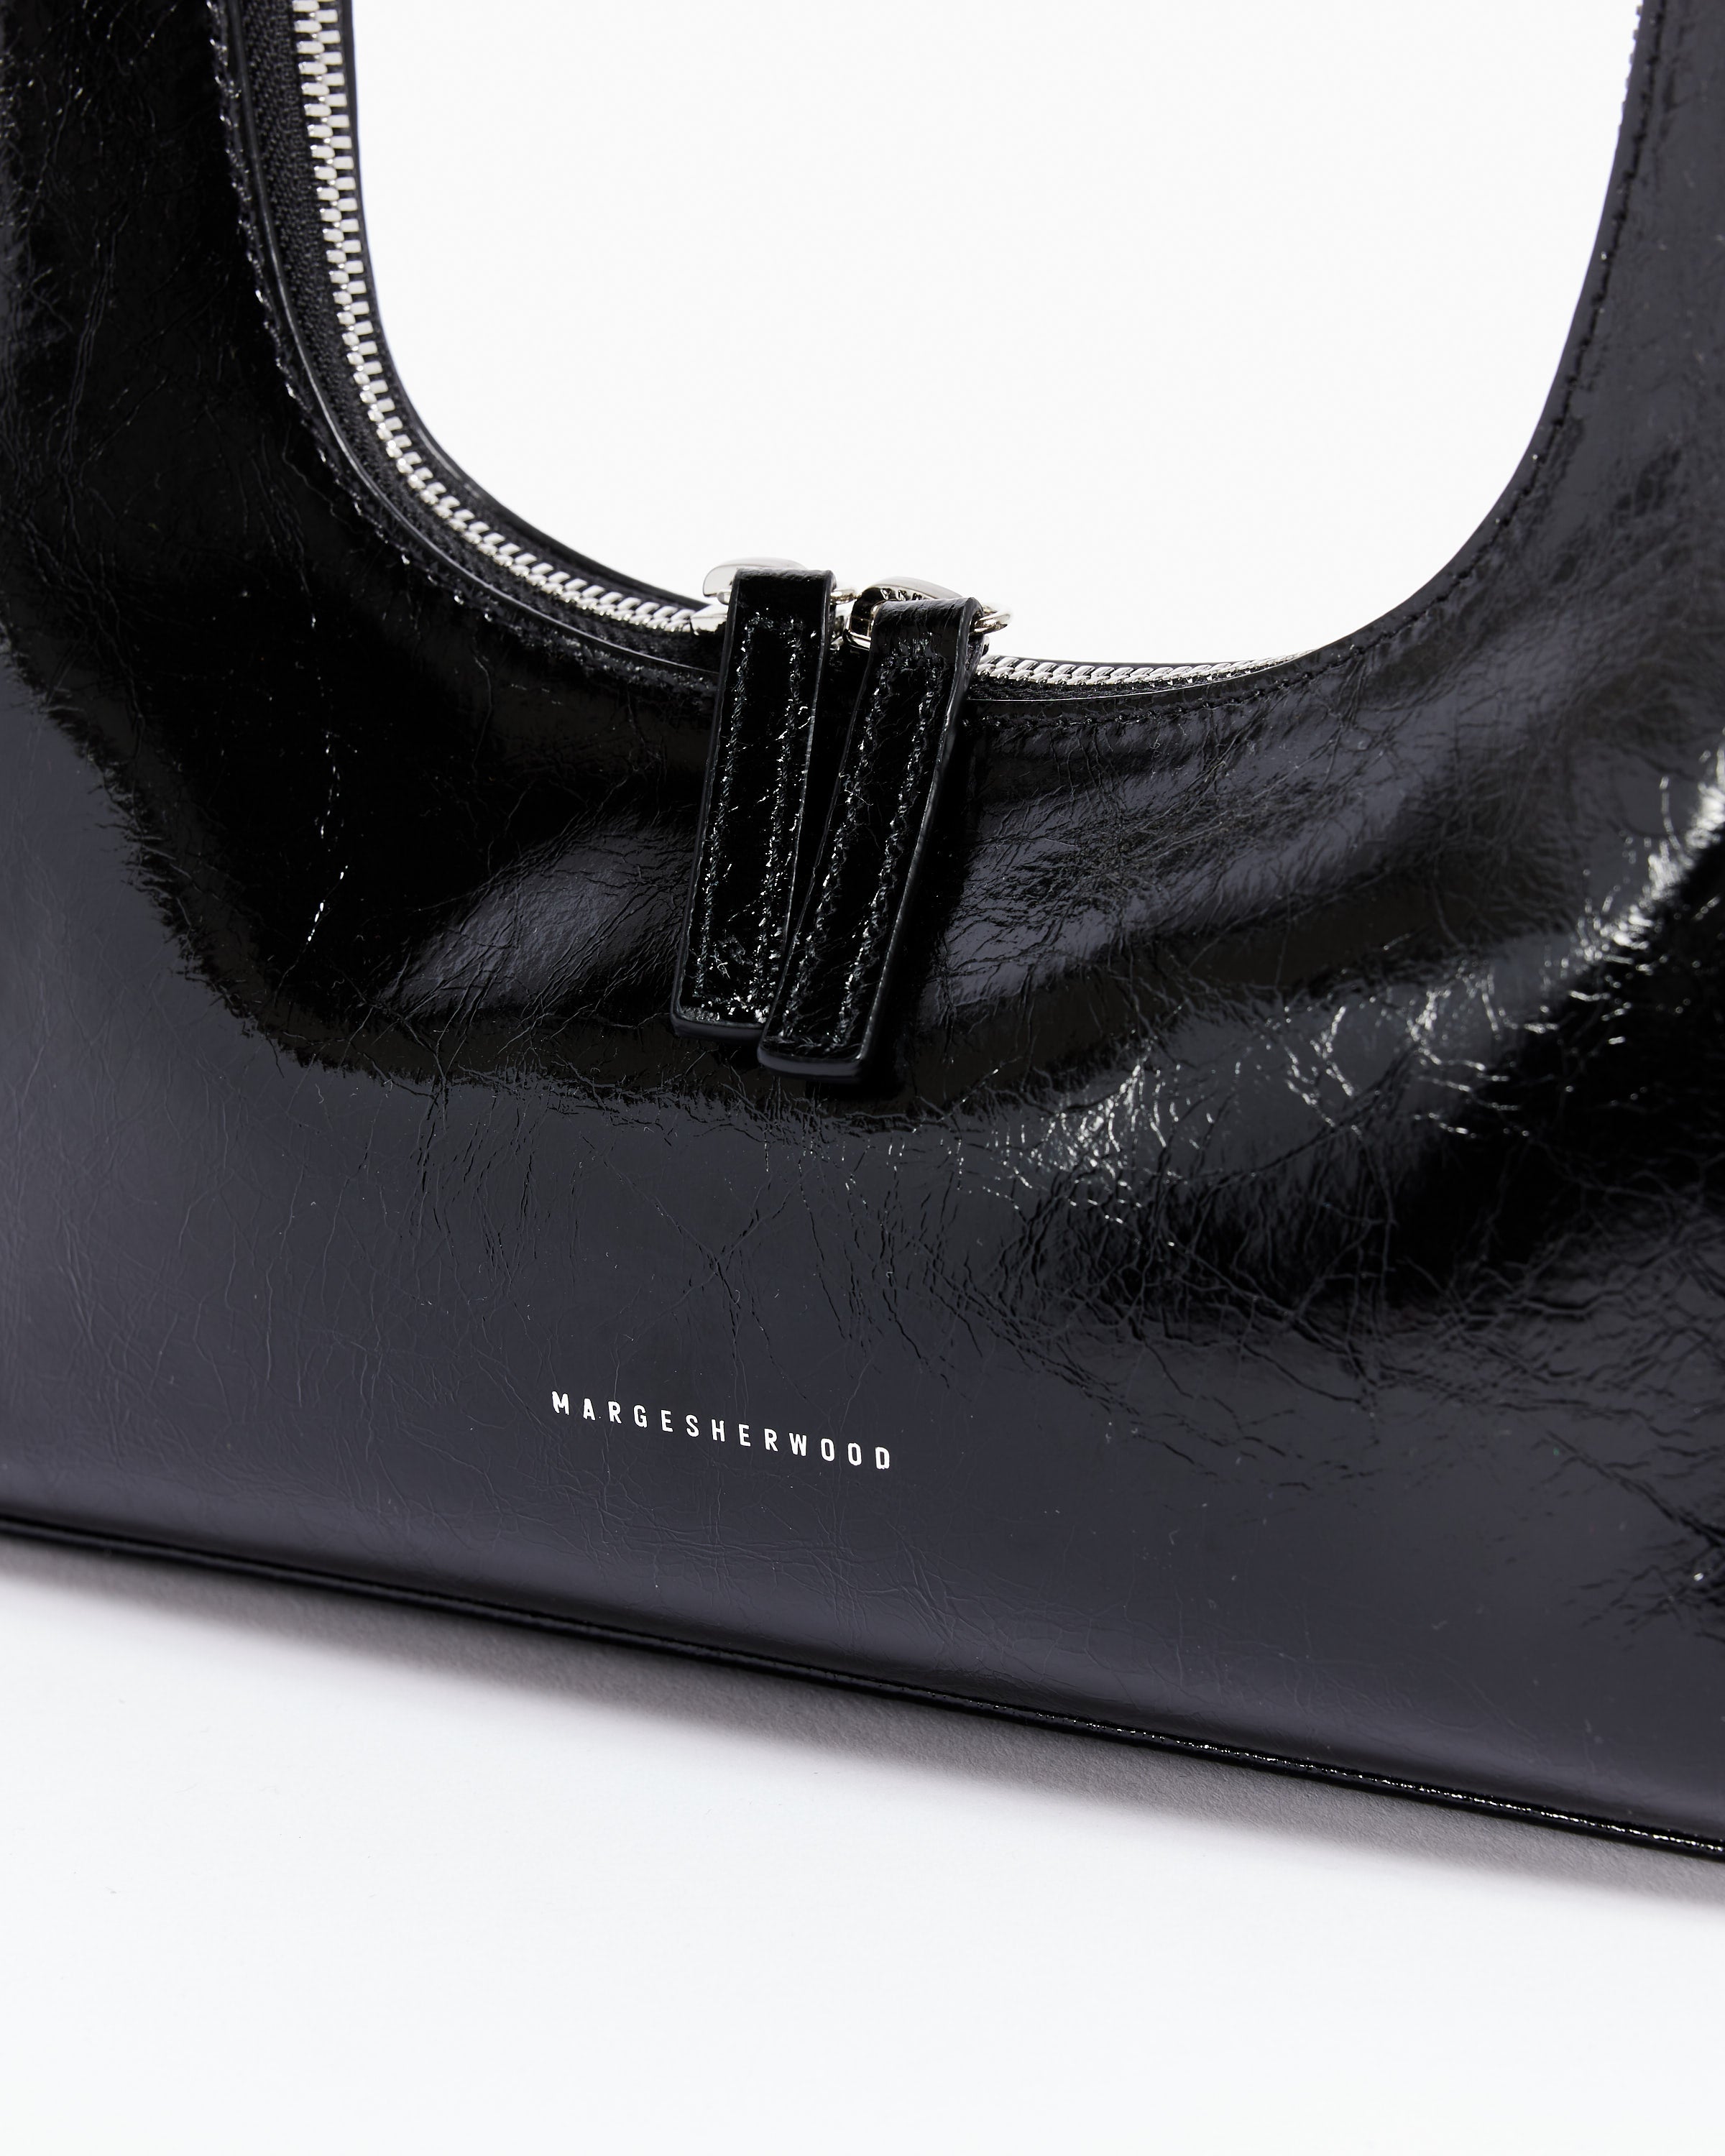 Parker Medium Crinkled Patent Leather Shoulder Bag